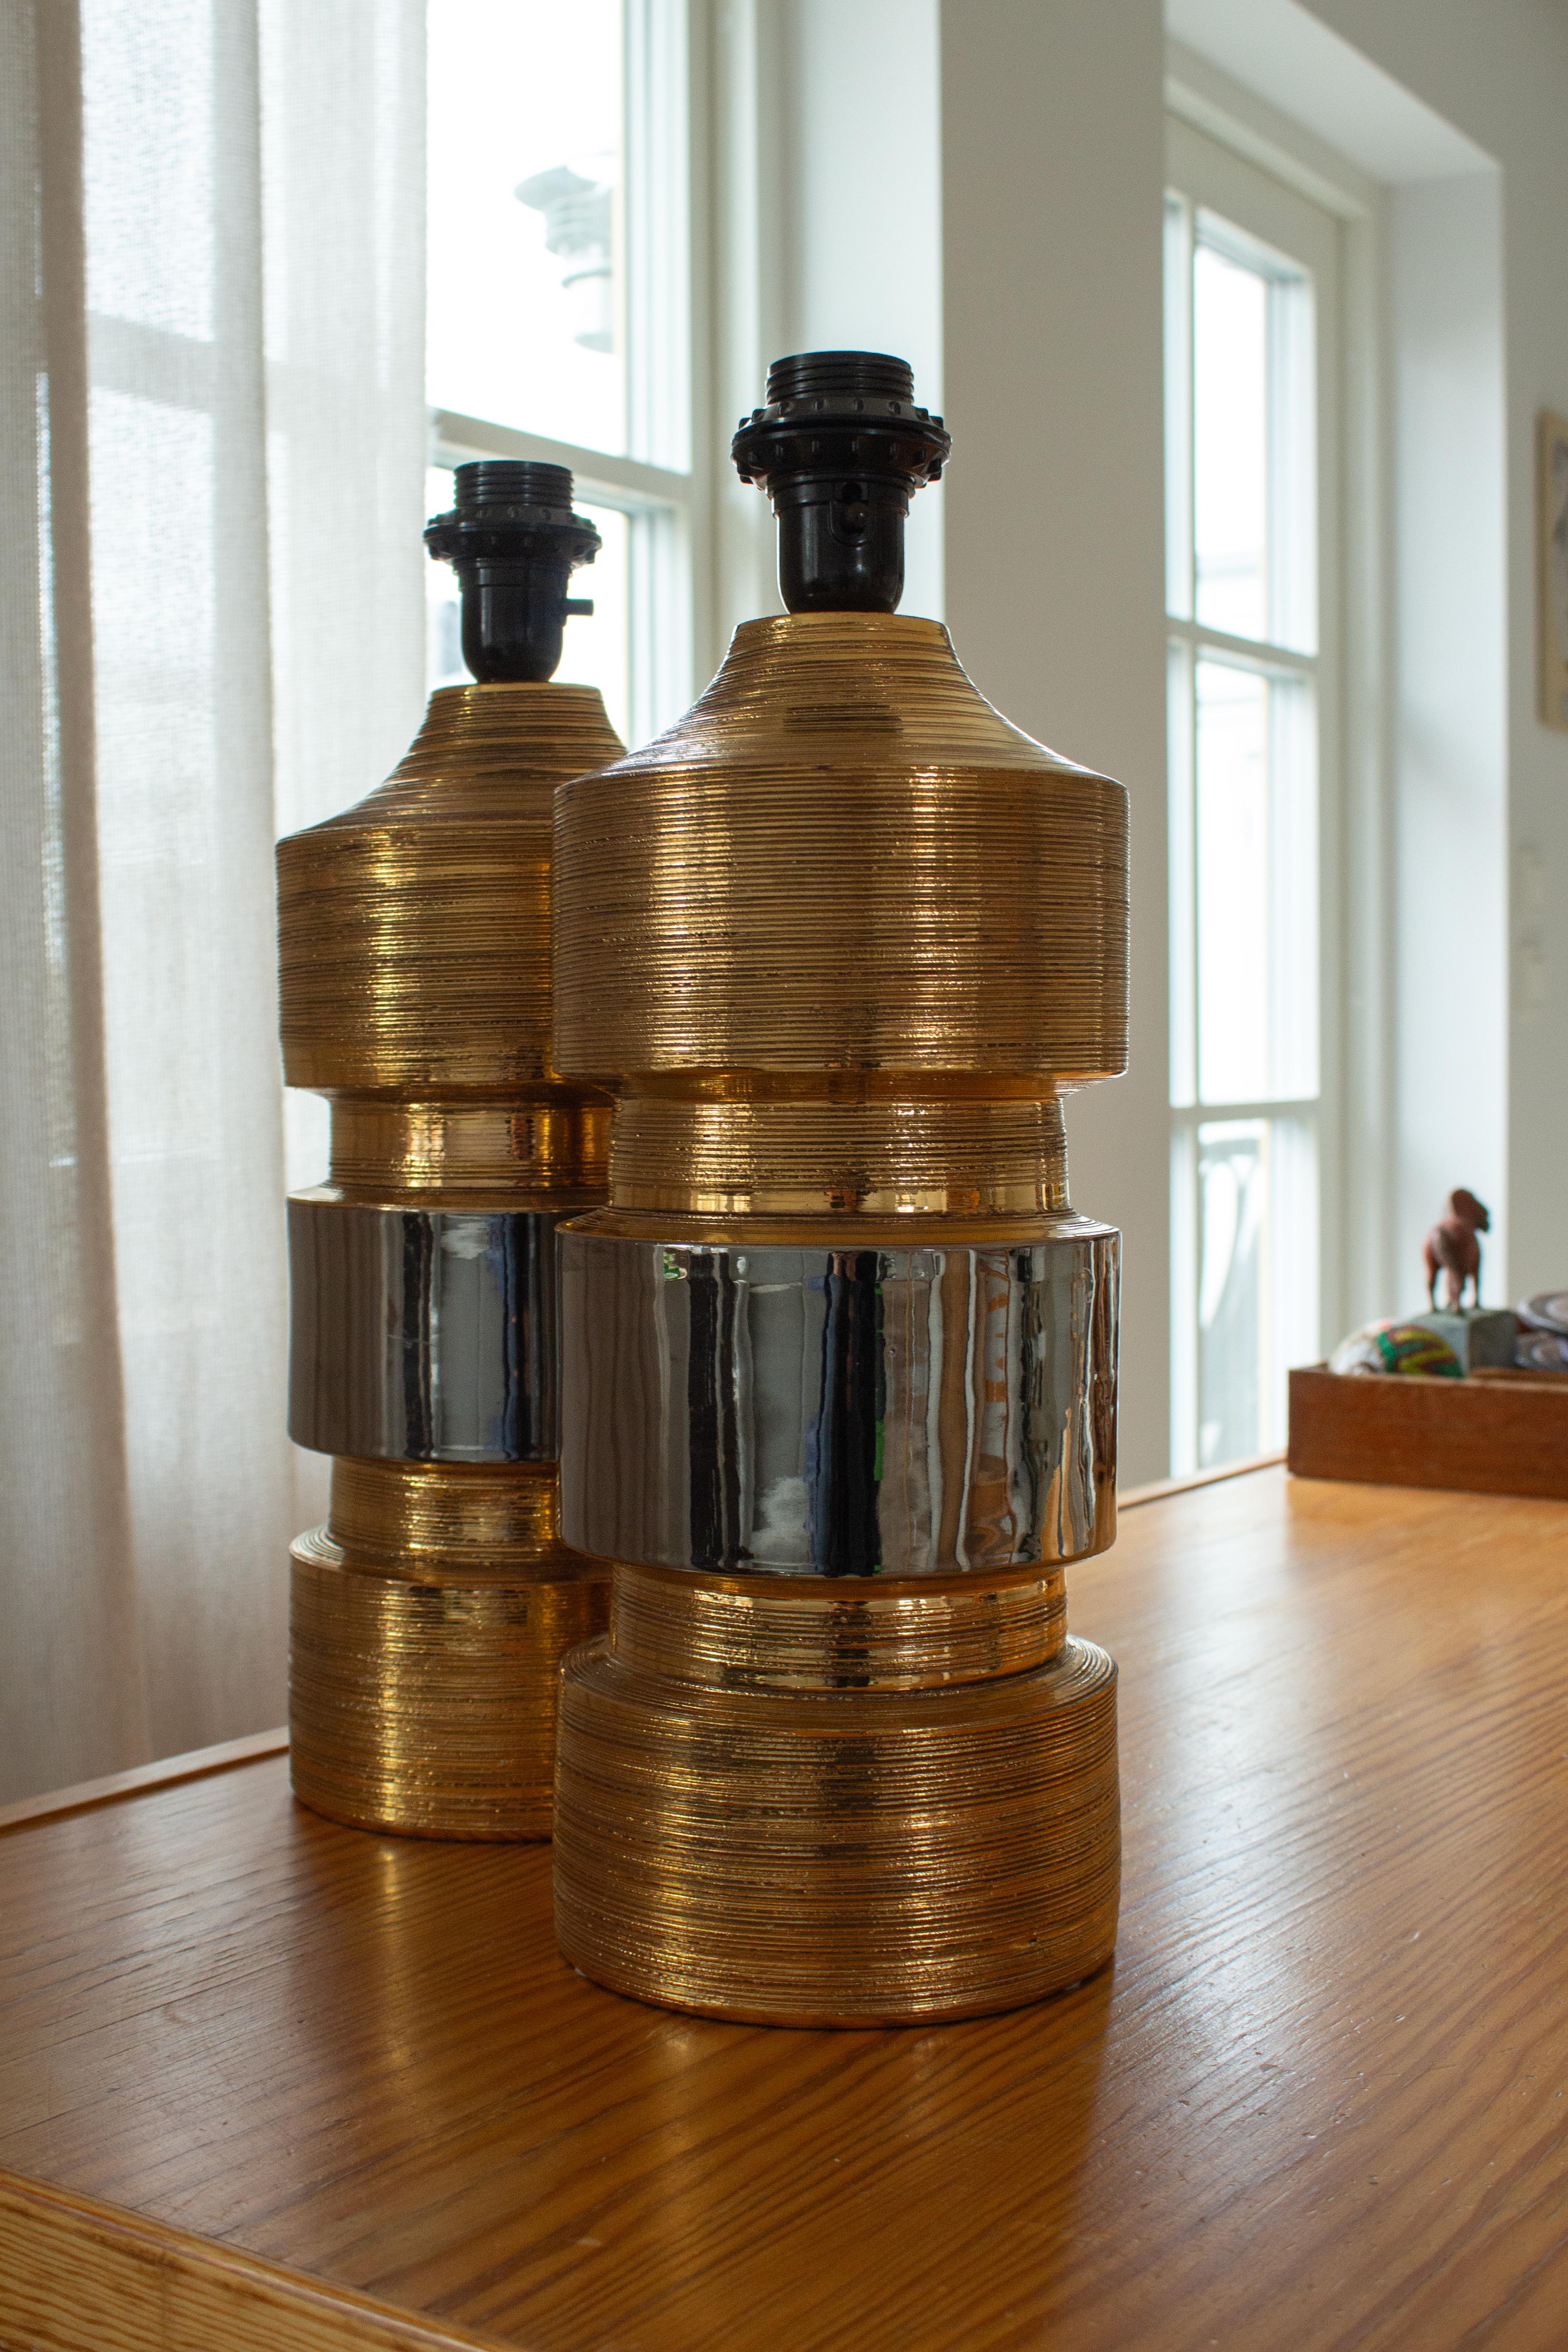 Wunderschönes Paar Keramik-Tischlampen der italienischen Designerfamilie Bitossi, entworfen und hergestellt von Bergboms in Schweden. Die Lampen sind in ausgezeichnetem Zustand. Die Keramik hat eine metallische Goldglasur mit einem Mittelstreifen in